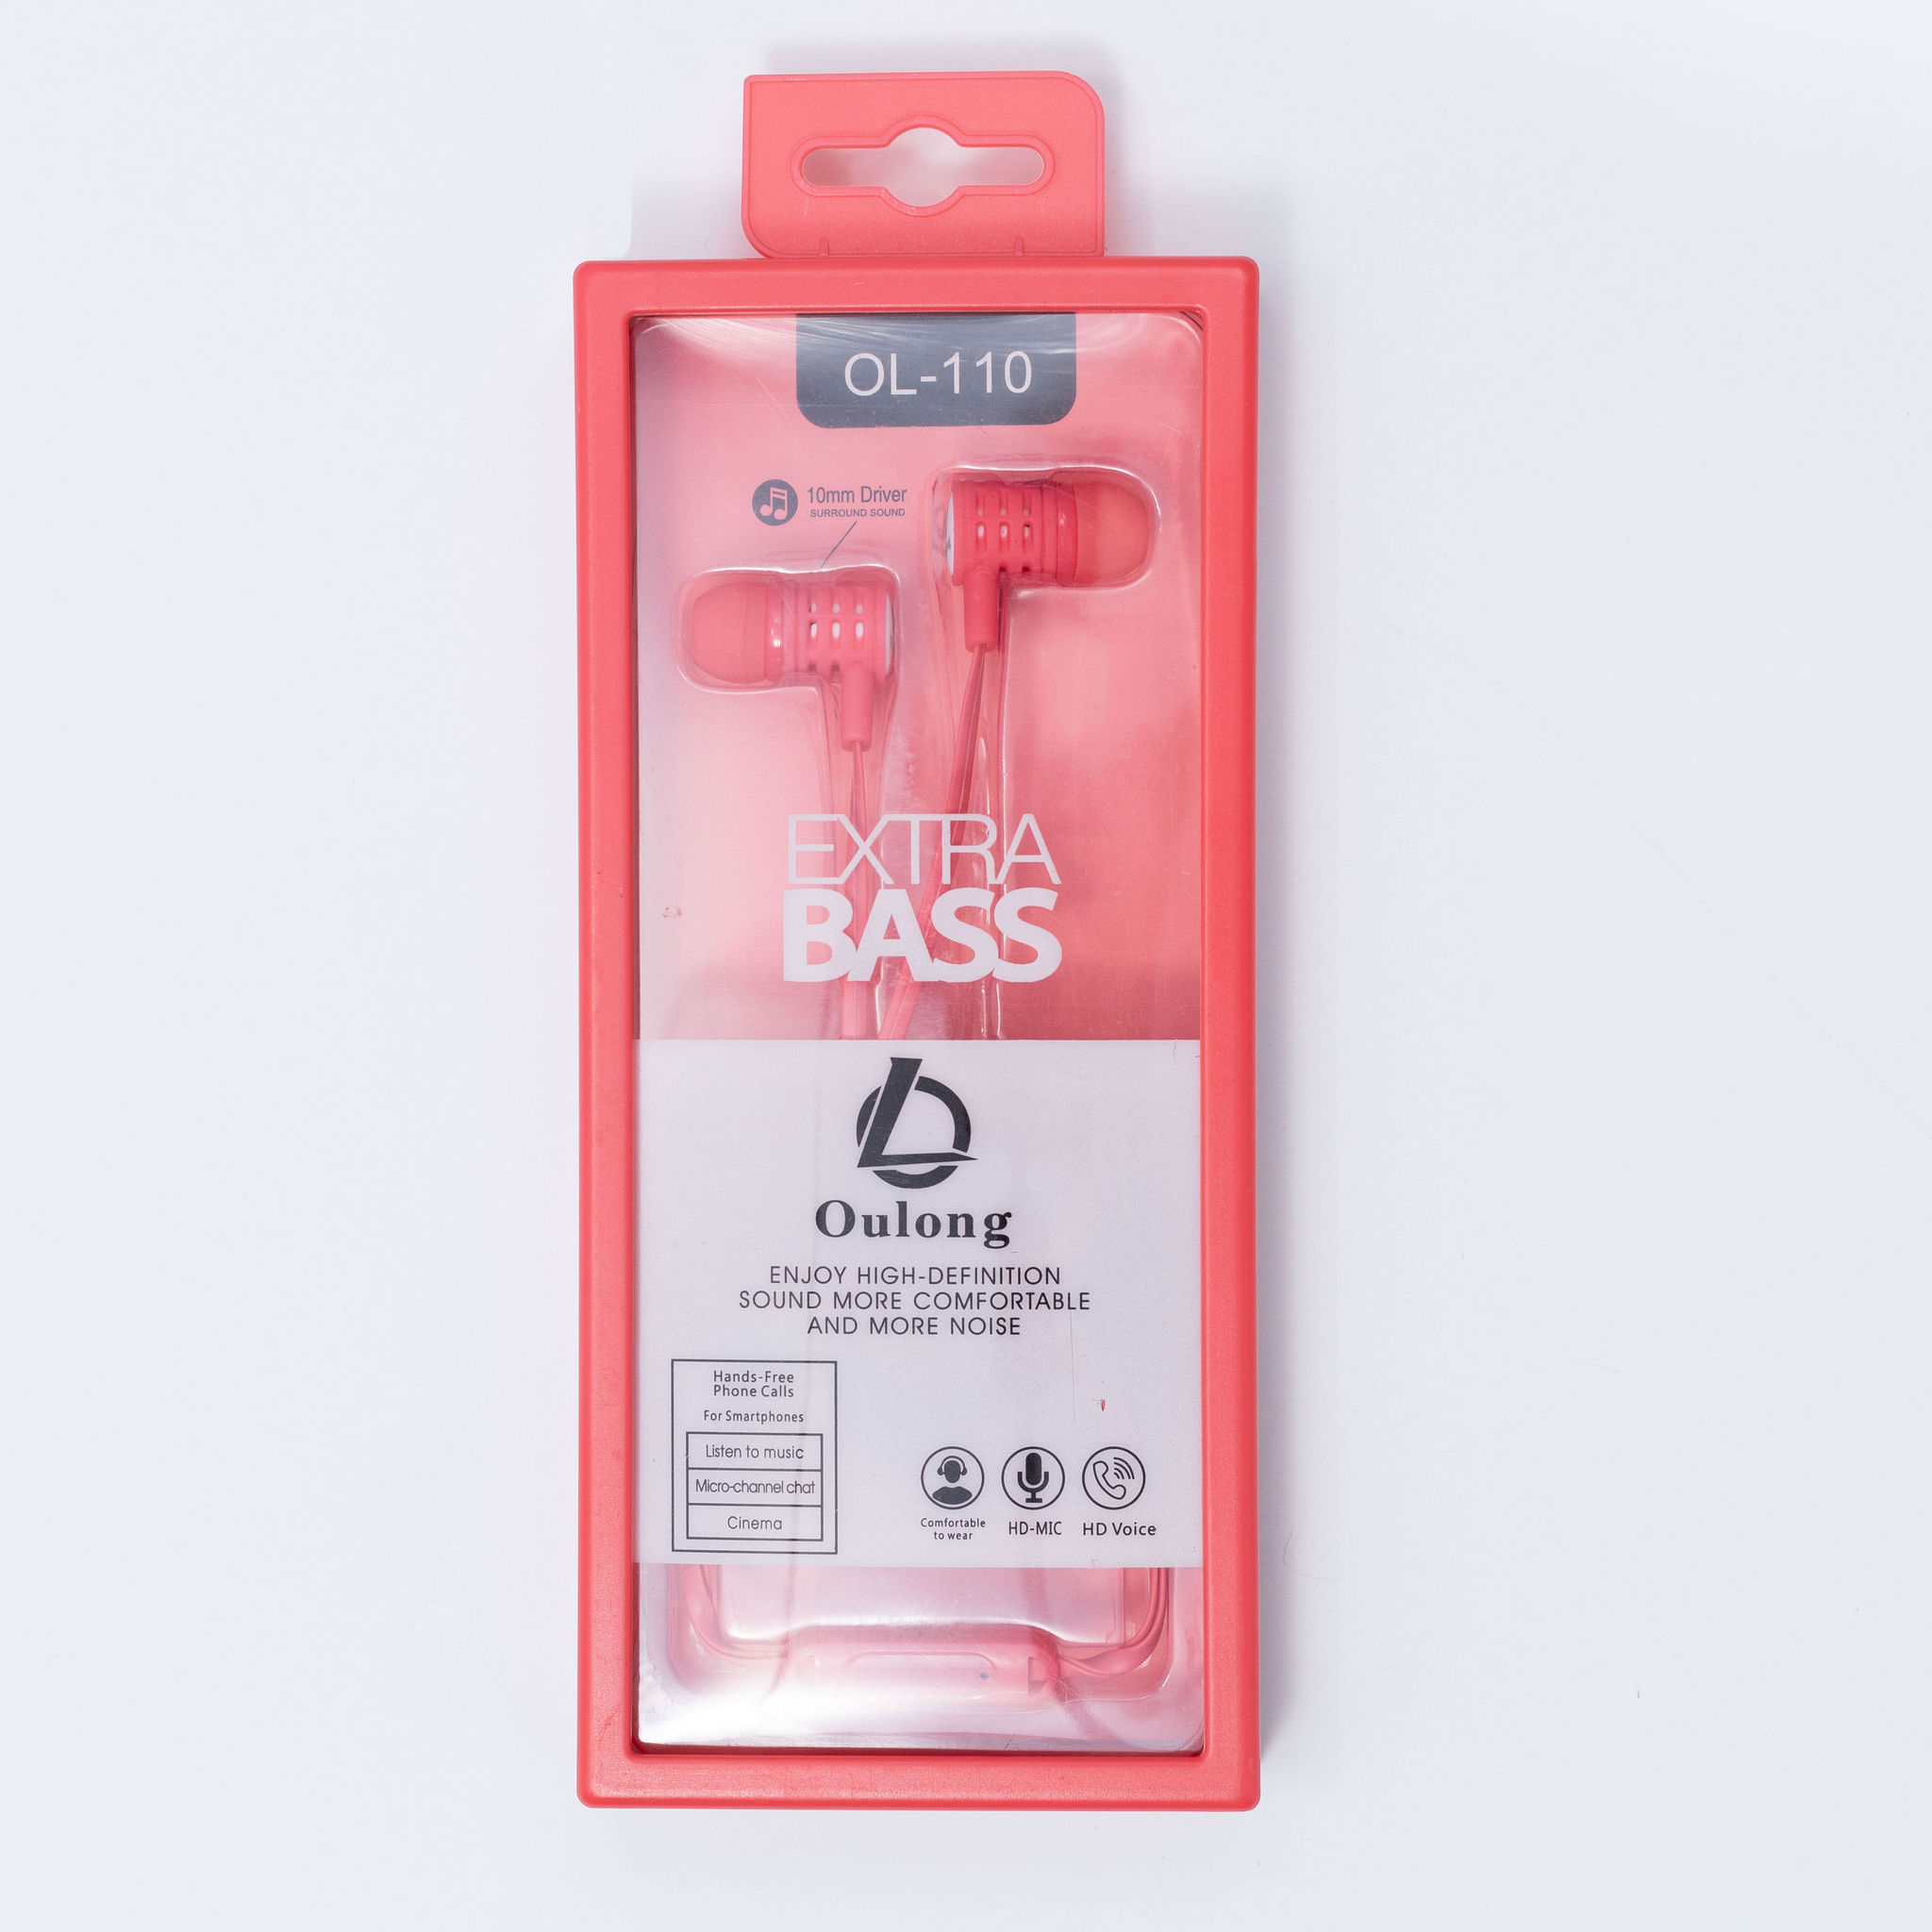 Extra Bass Earphones